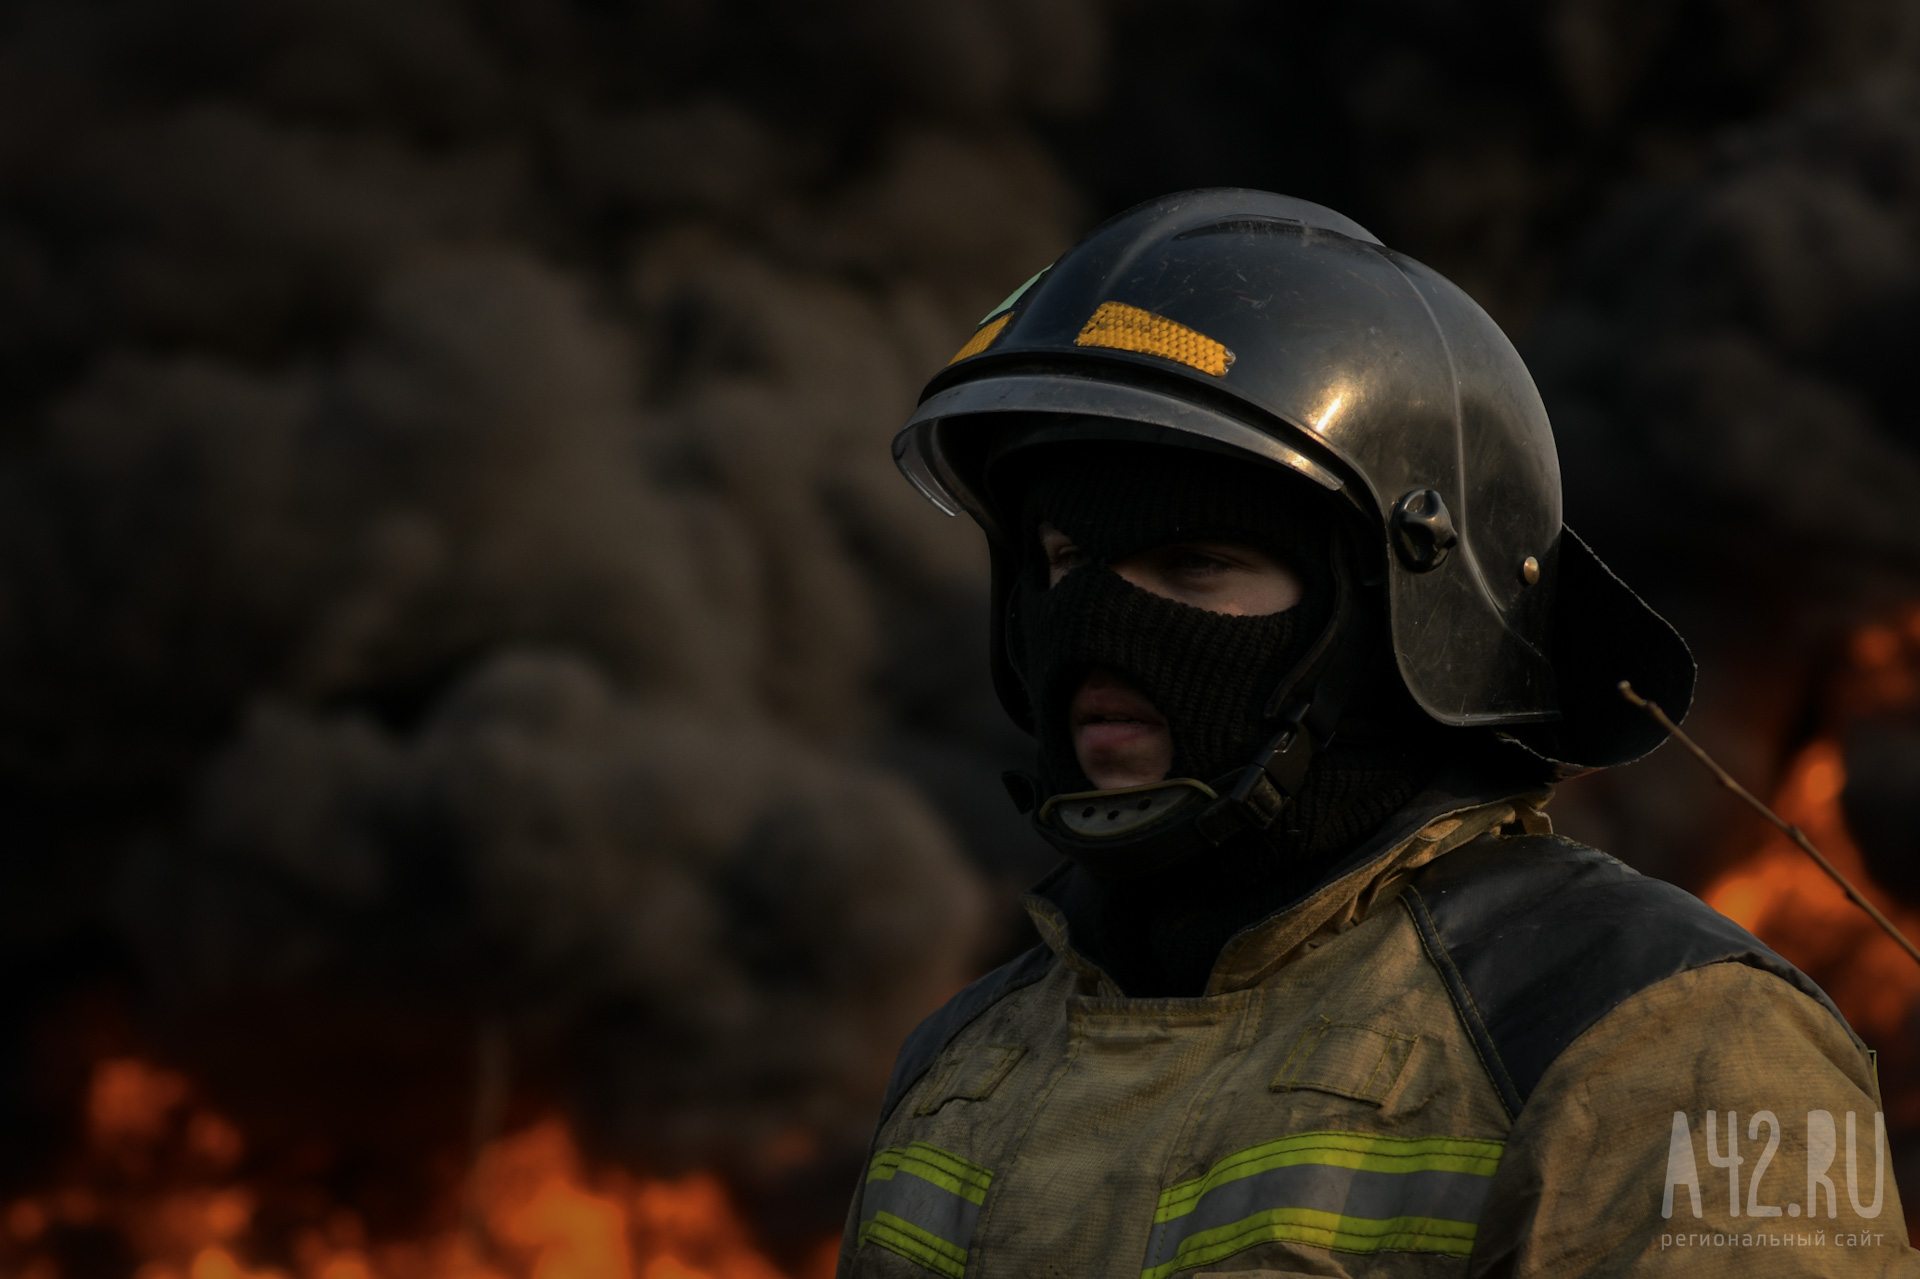 В Кузбассе загорелся автомобиль. Пожарные потушили огонь за считанные минуты